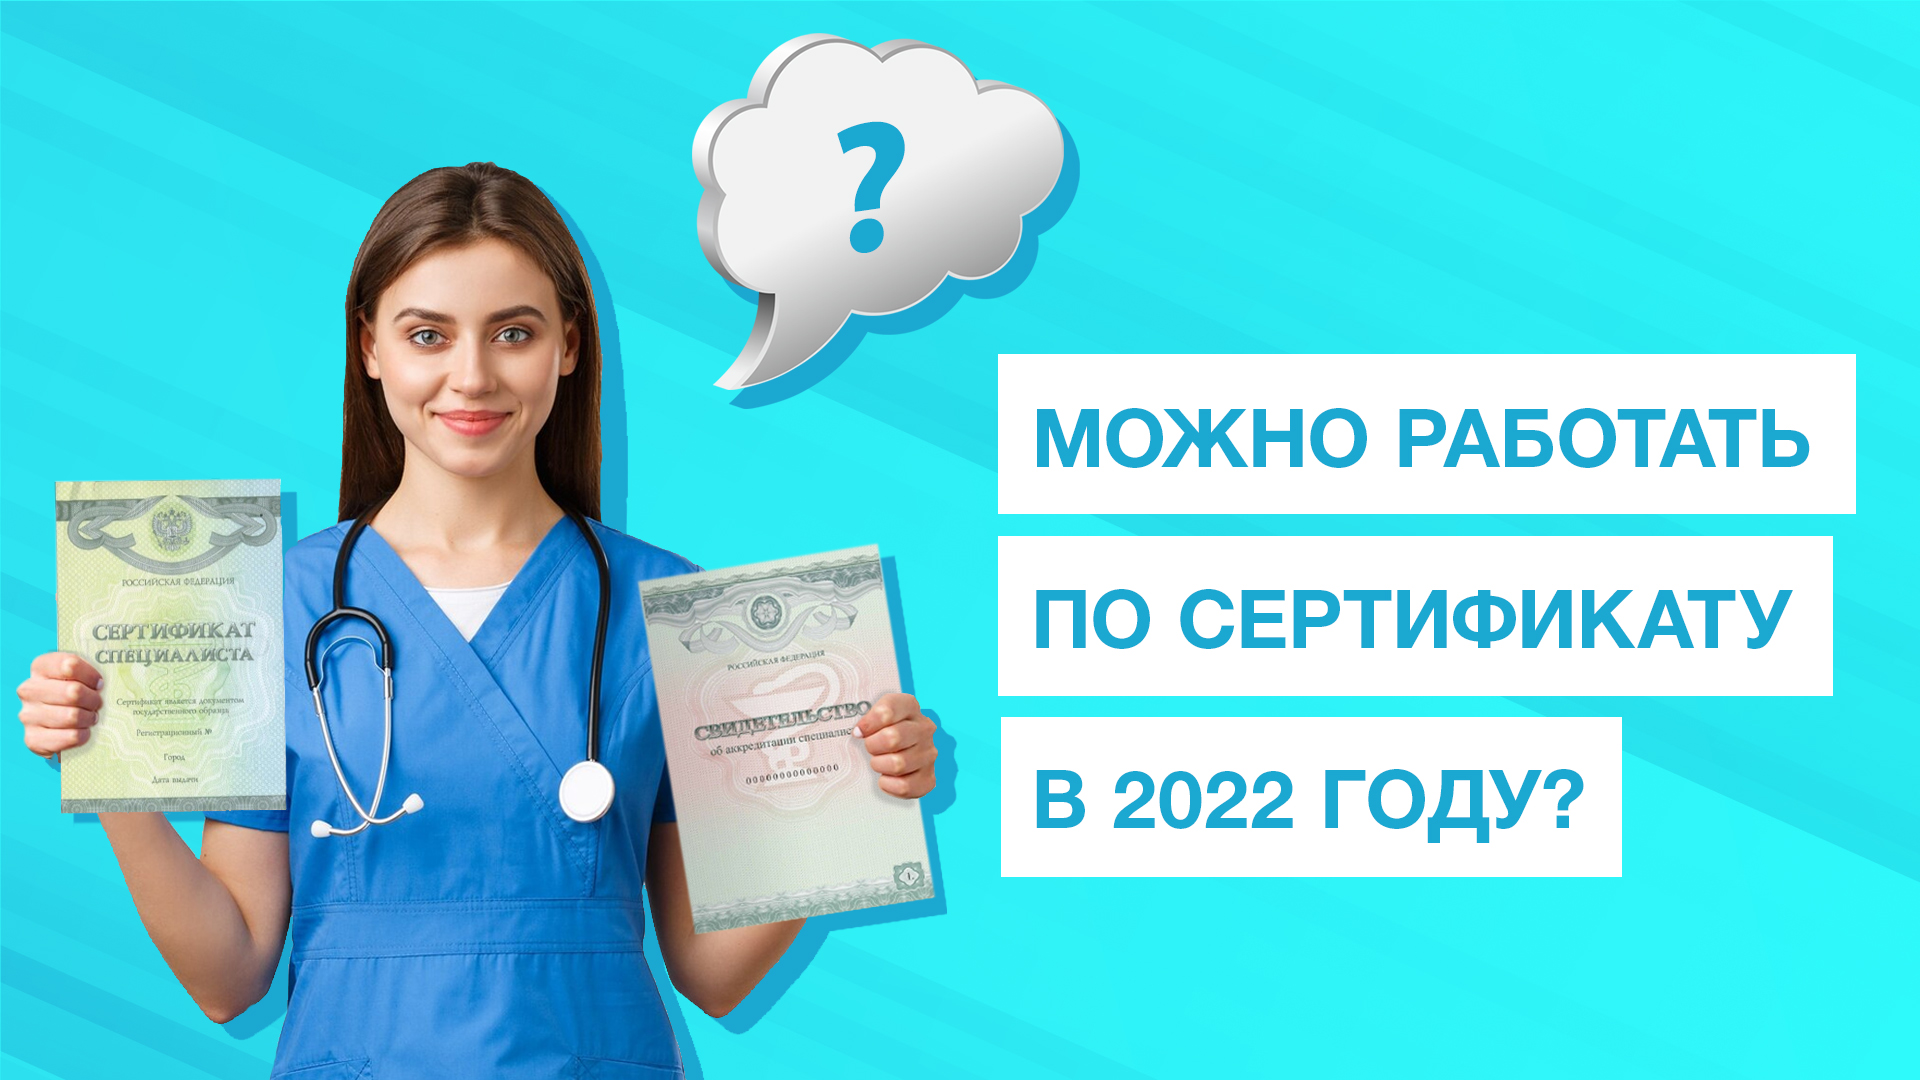 Сайт средний медицинский фац. Сертификат врача. Аккредитация врачей. Аккредитация медицинских работников в 2022. Сертификат медицинской сестры в 2022 году.